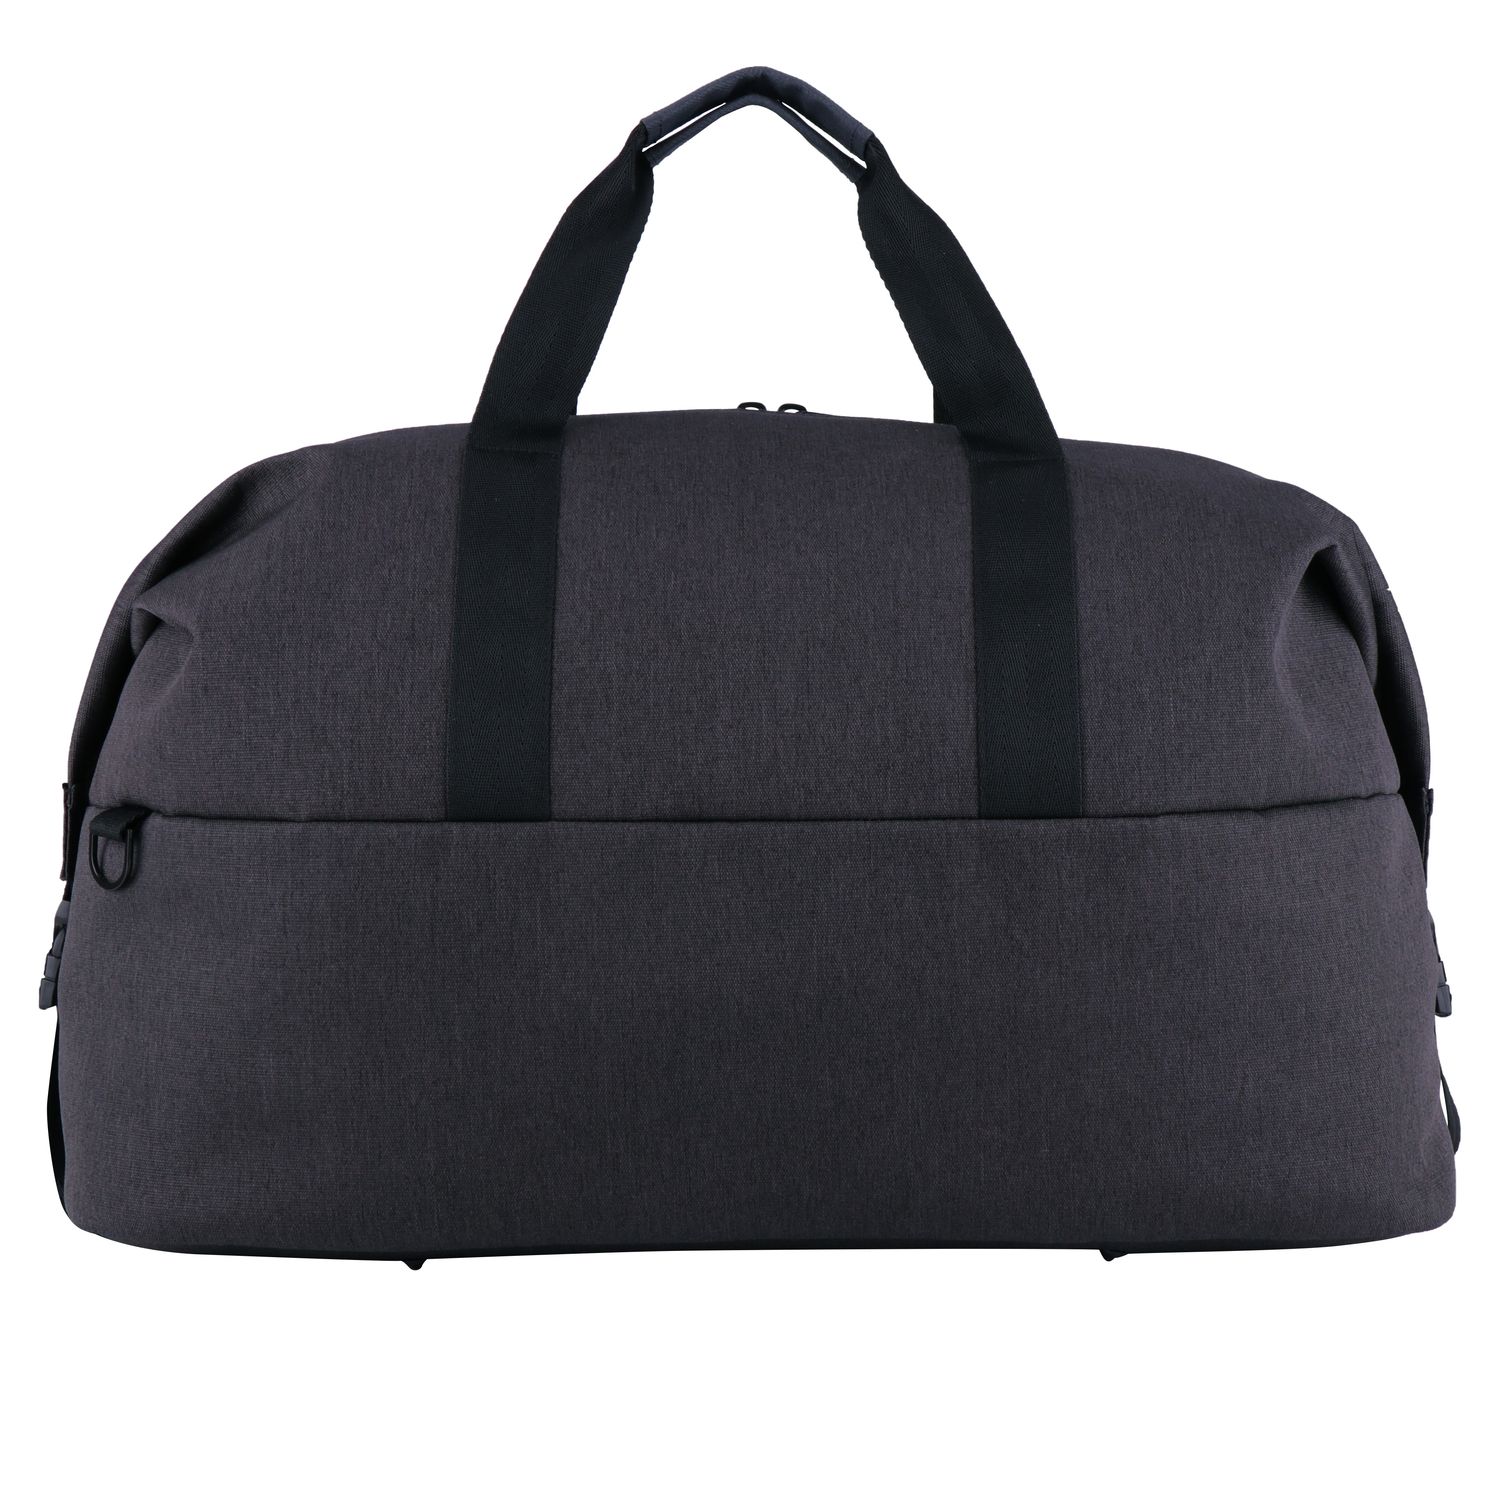 AROSA Duffle Bag